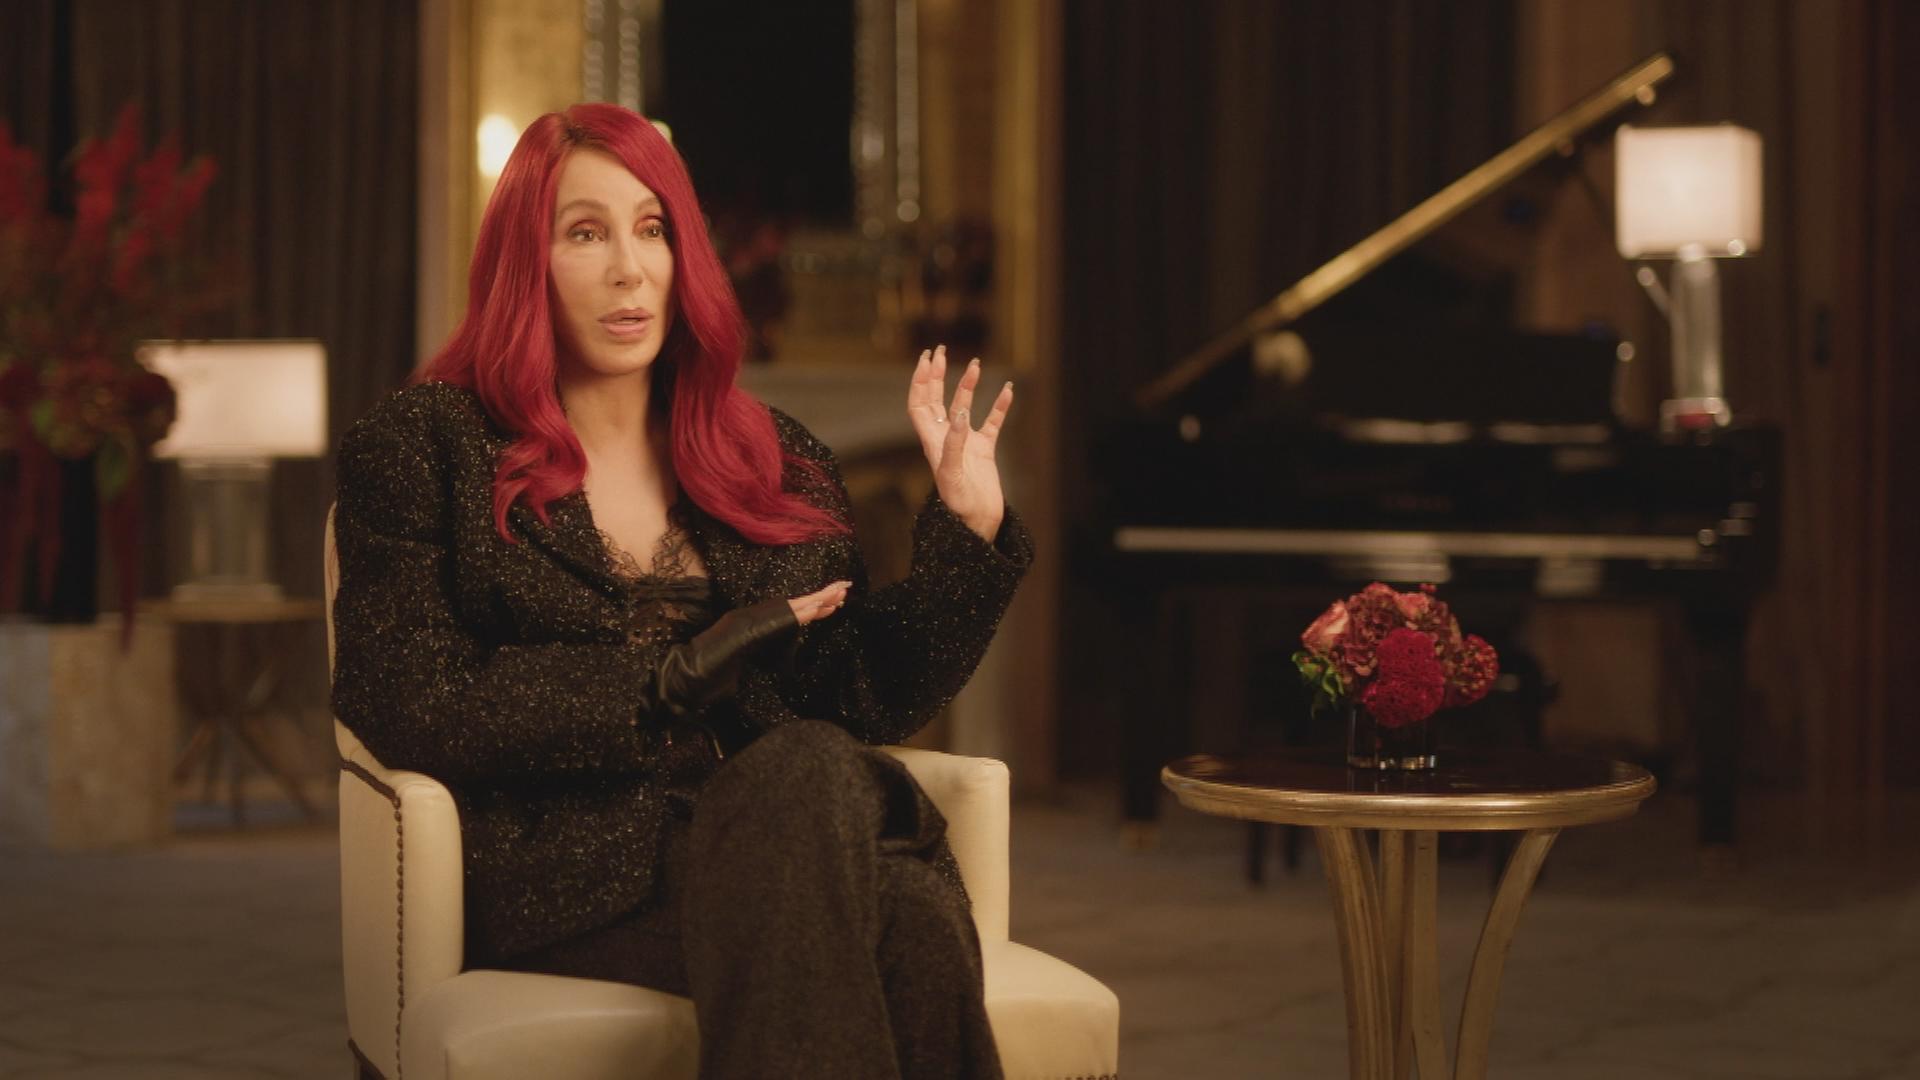 Die Pop-Sängerin Cher während eines Interviews